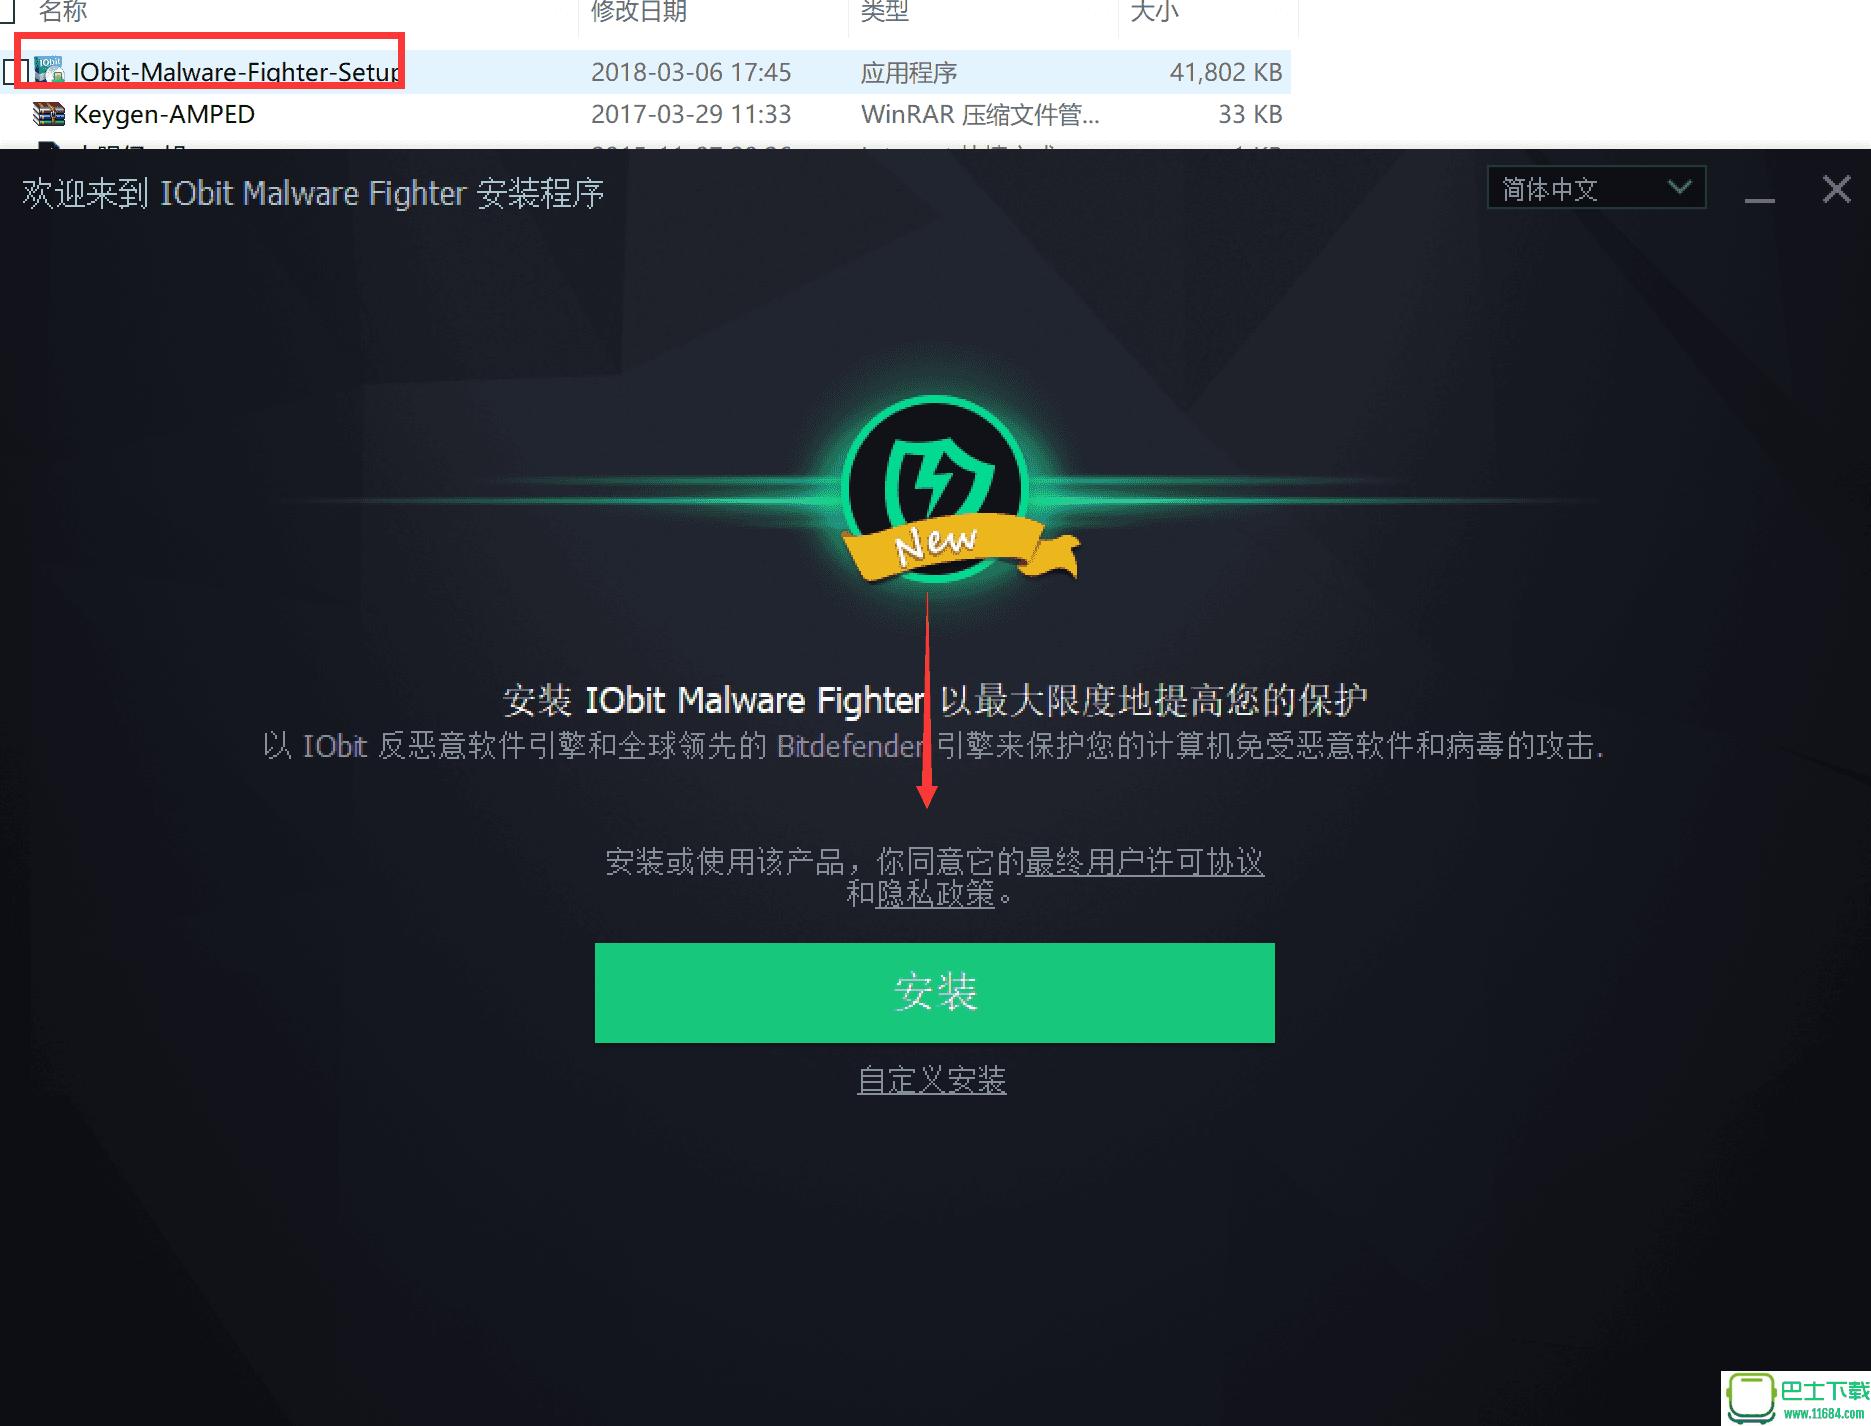 功能强大的系统软件IObit Malware Fighter Pro 6.2.0.4770 中文破解版下载